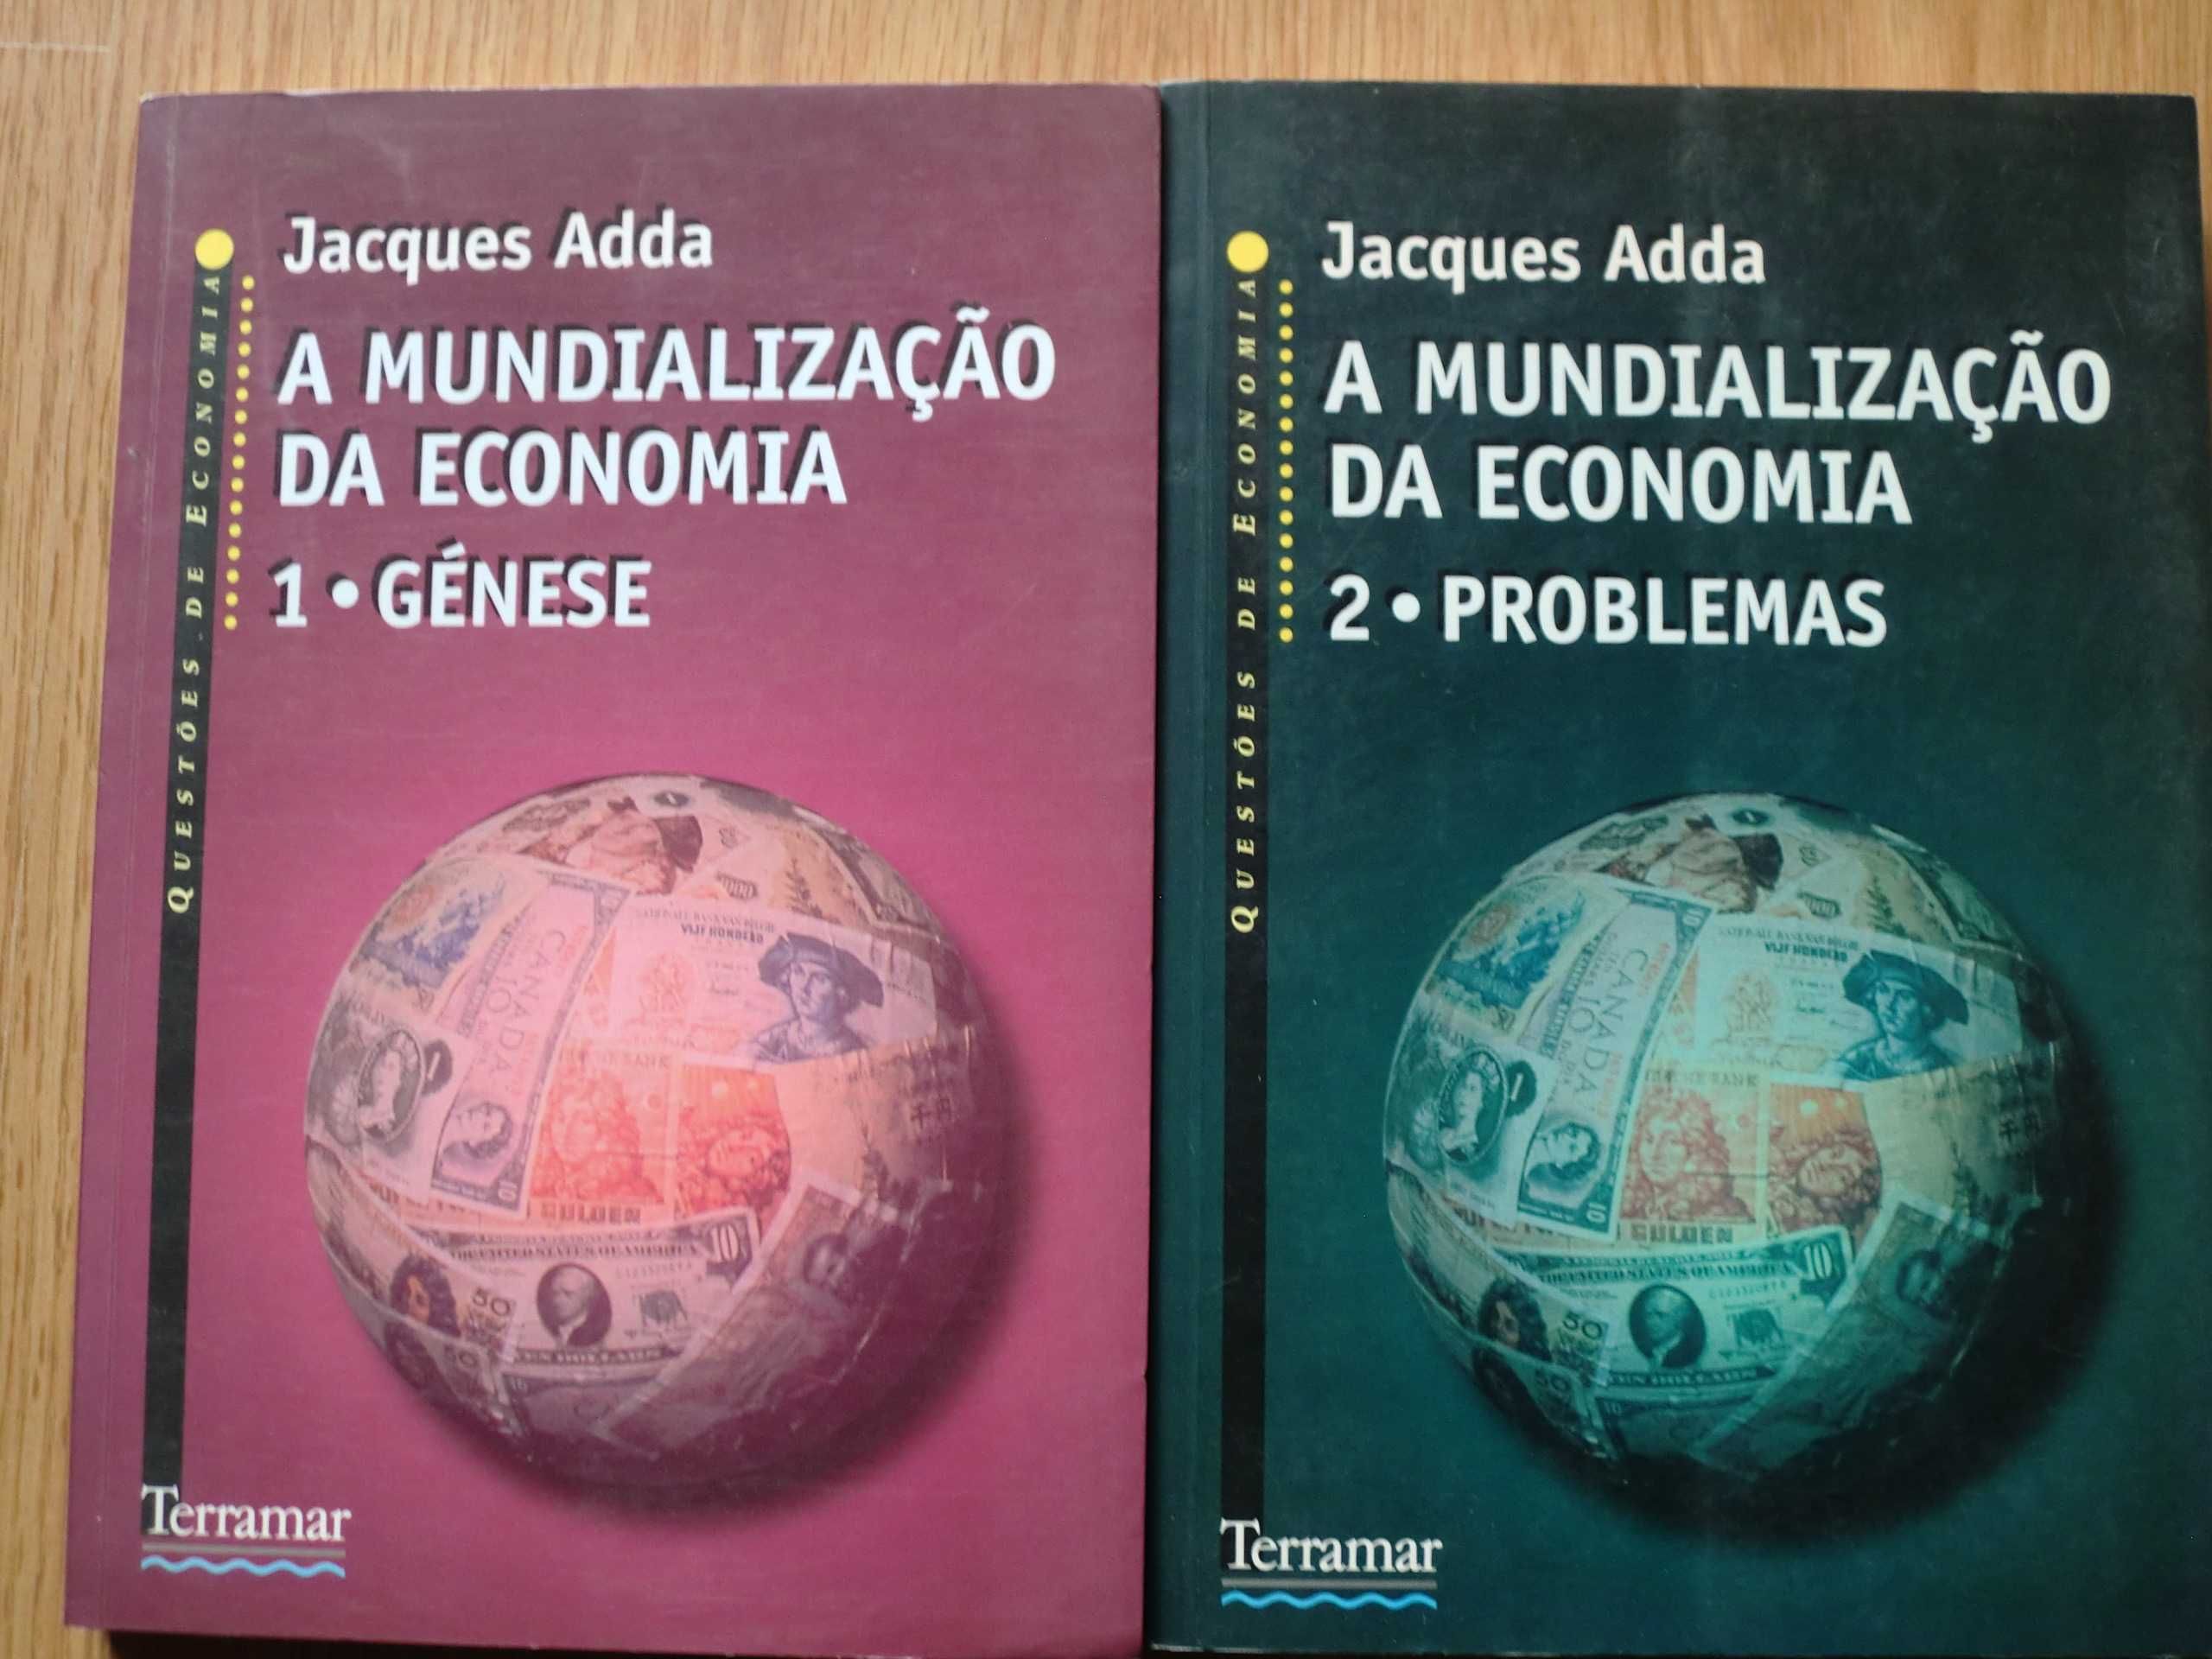 A Mundialização da Economia
de Jacques Adda - 2 Volumes